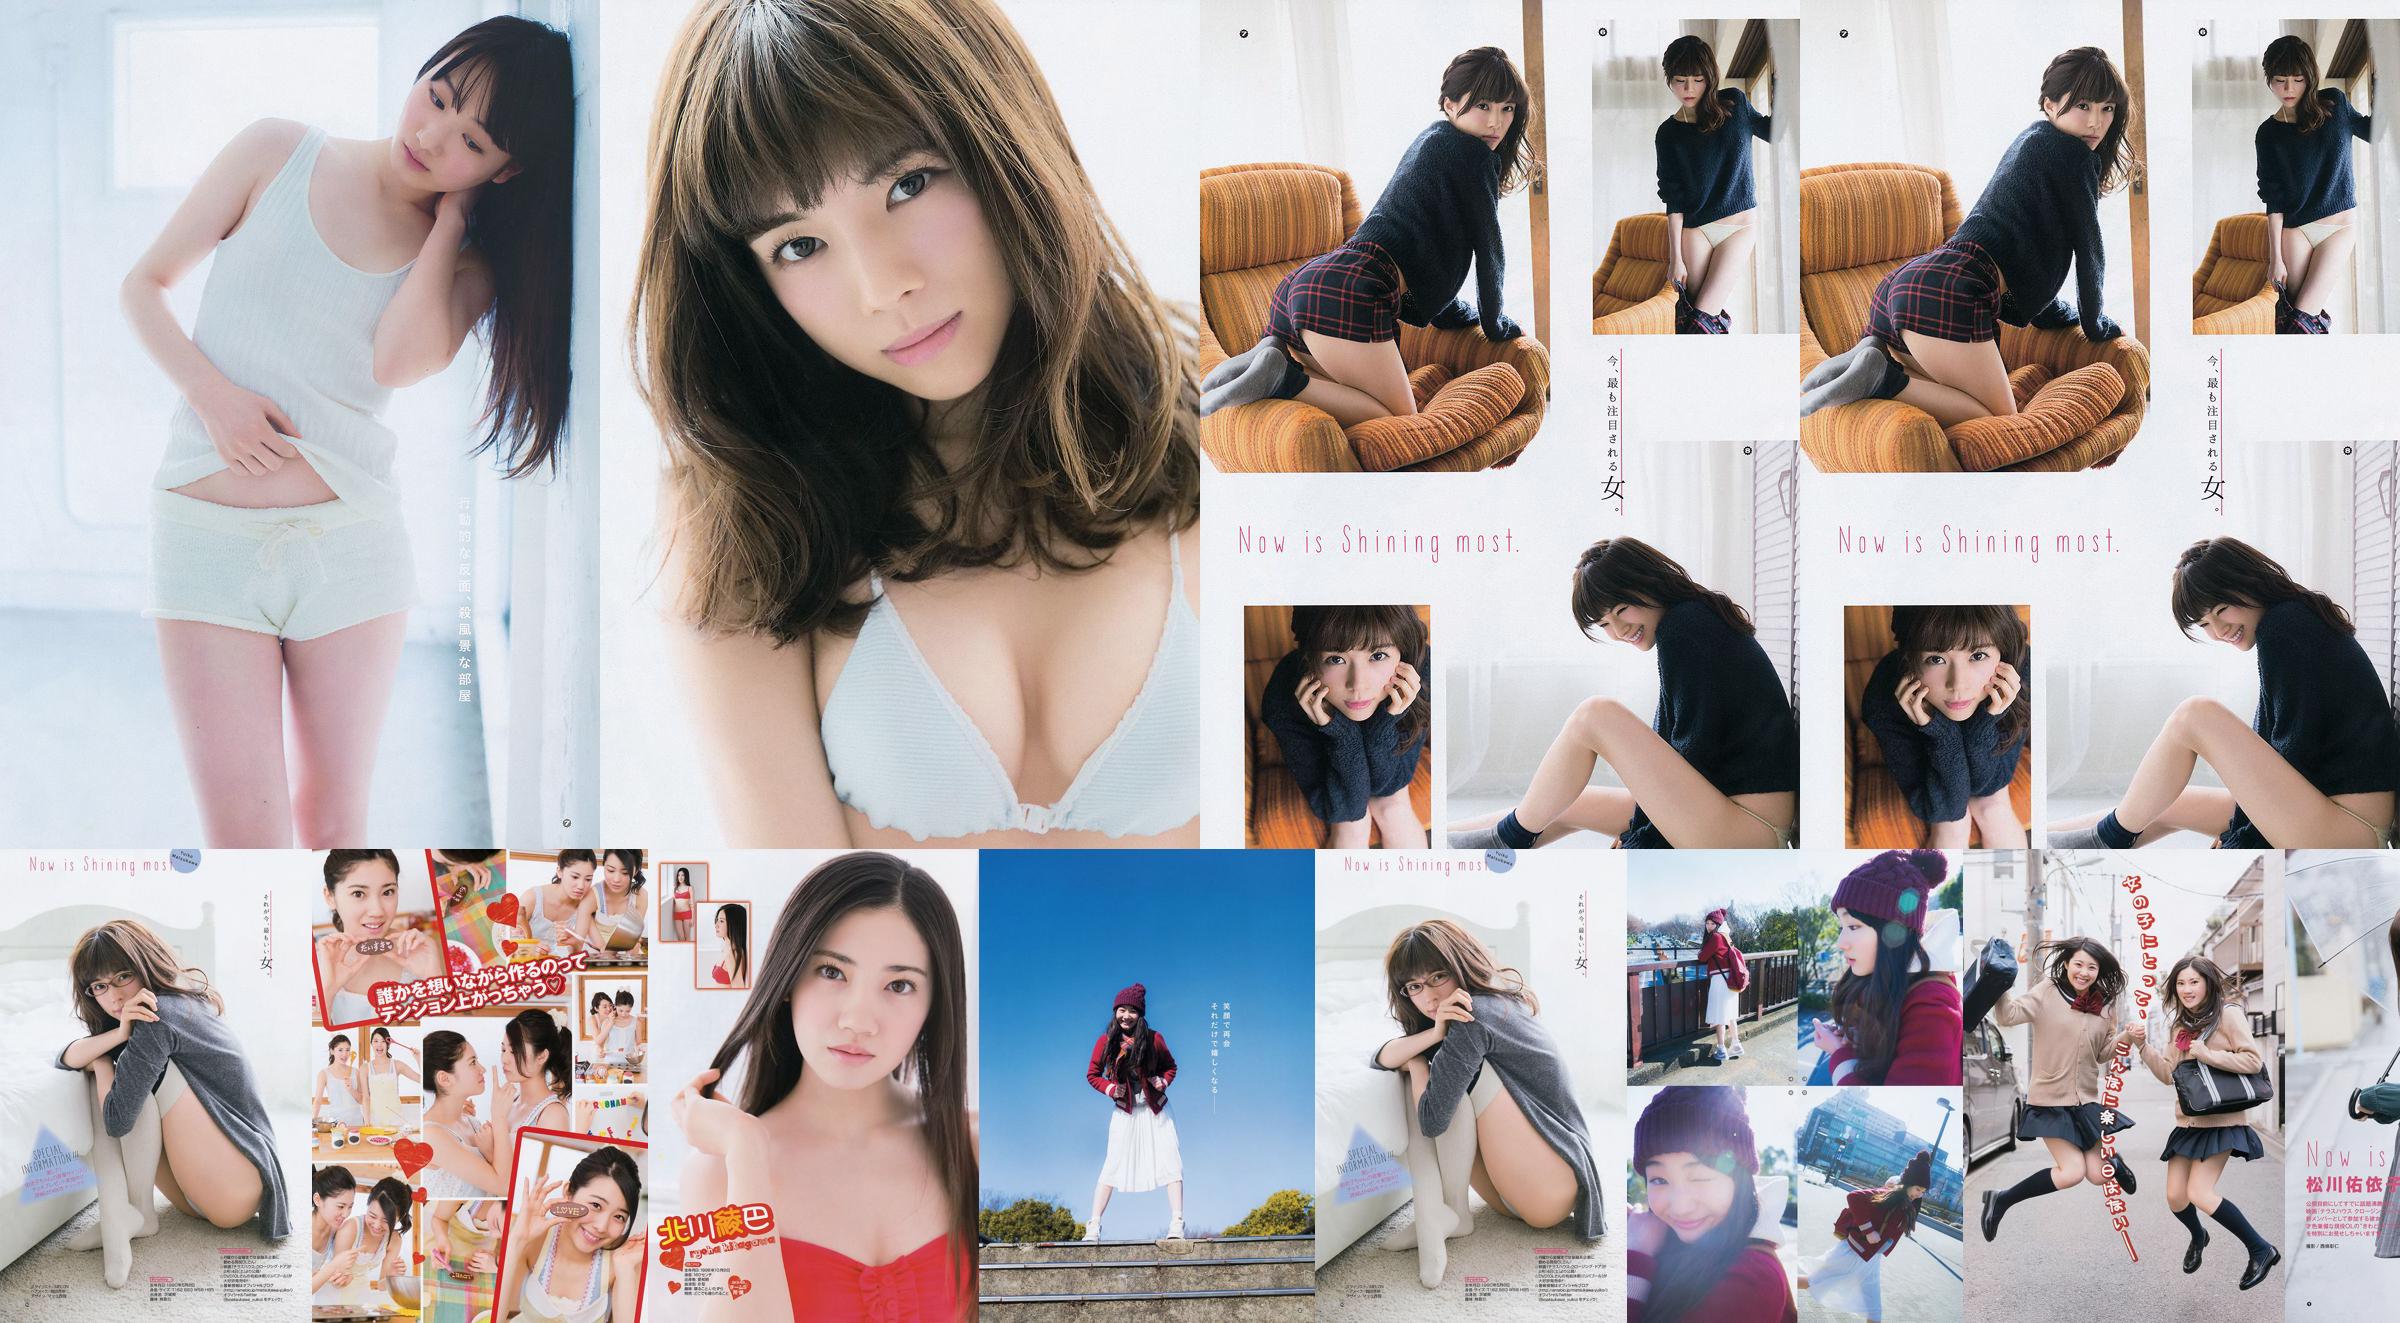 [Young Gangan] Ryoha Kitagawa Ami Miyamae Yuiko Matsukawa Narumi Akizuki 2015 Fotografia No.04 No.c6a7ef Página 11